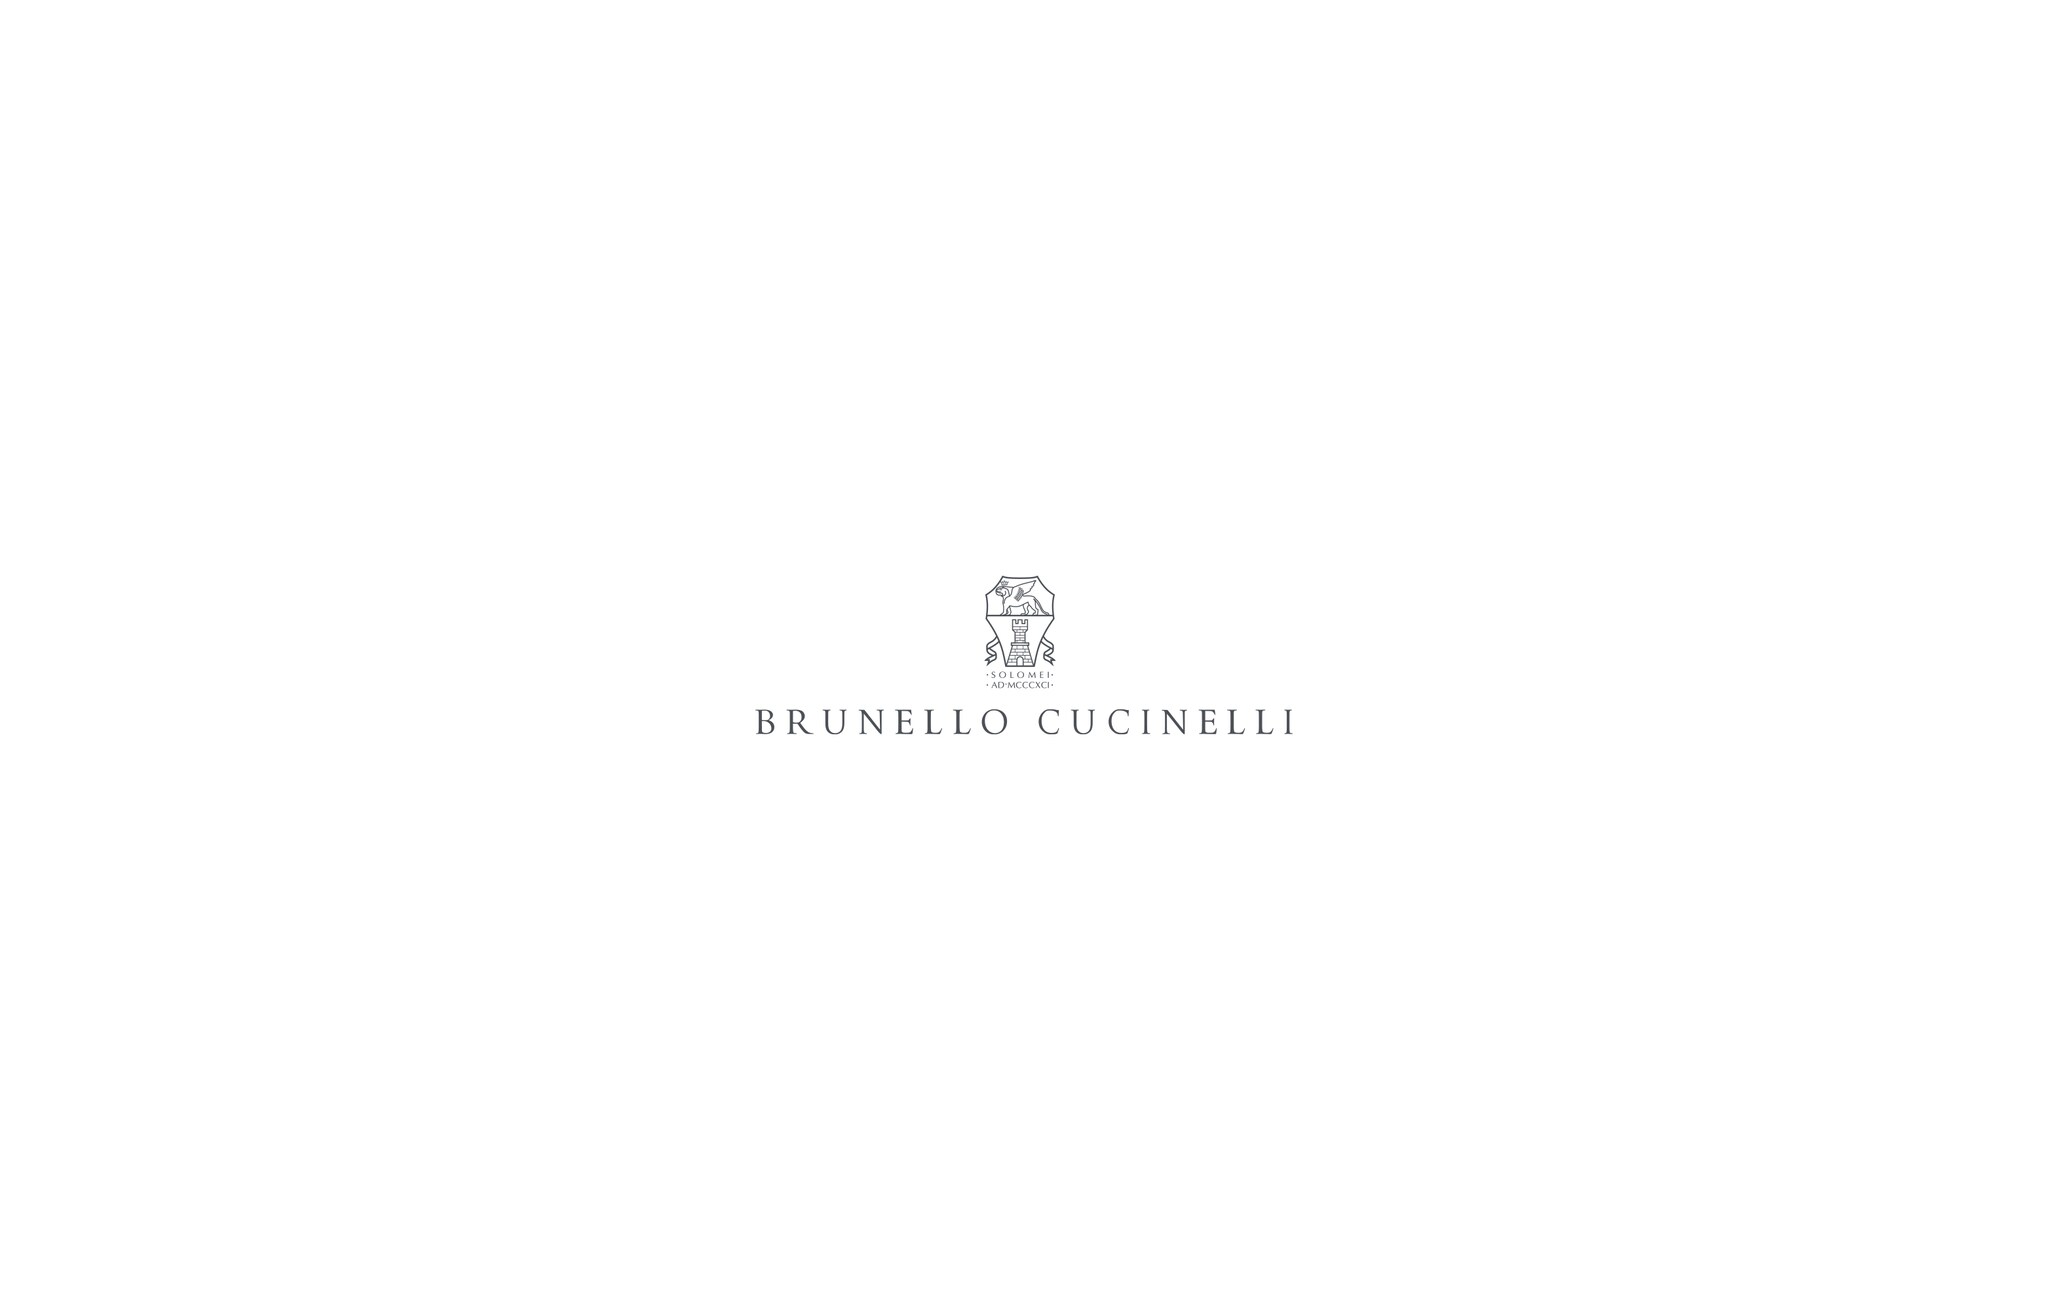  棉丝衬衫 天蓝 女款 - Brunello Cucinelli 